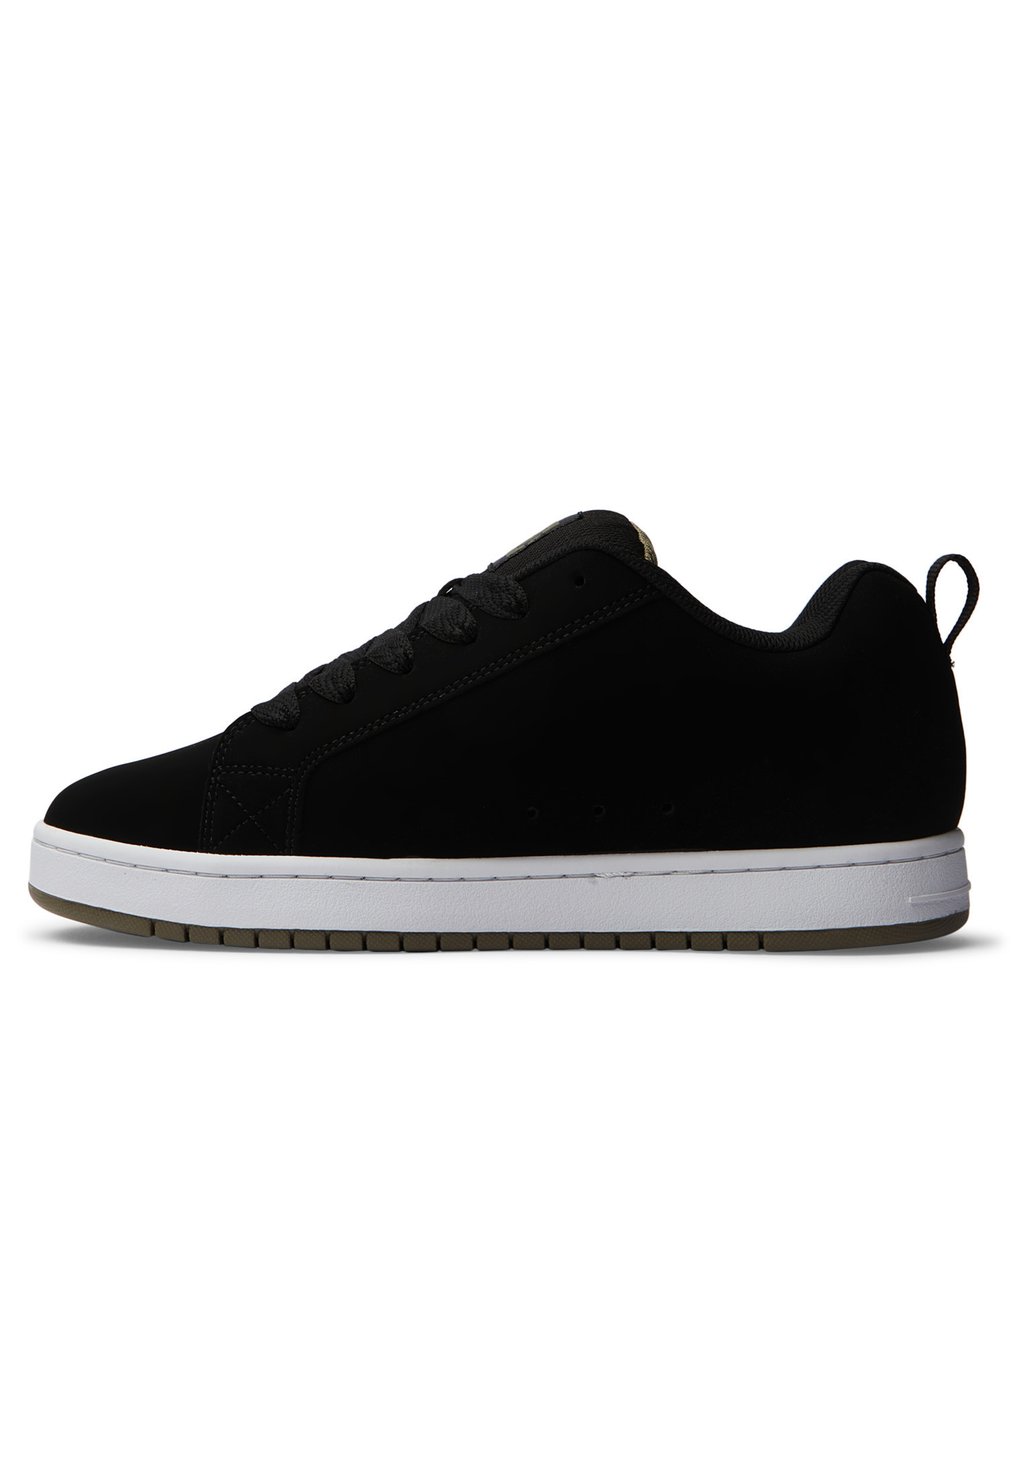 Кроссовки COURT GRAFFIK Dc Shoes, черный кроссовки dc shoes court graffik unisex white black basic